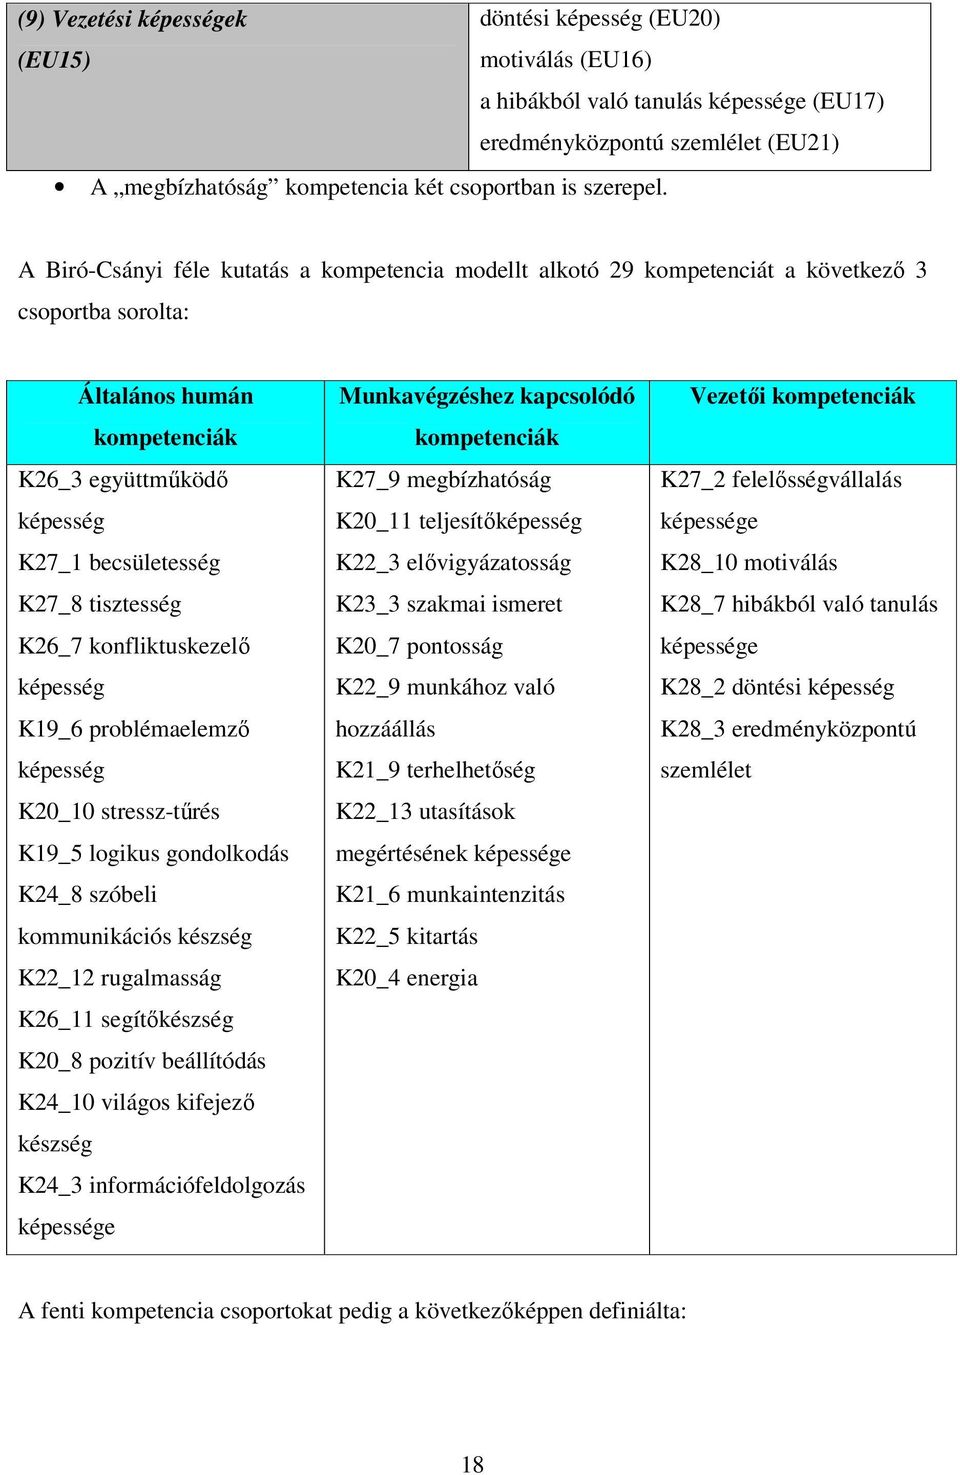 A Biró-Csányi féle kutatás a kompetencia modellt alkotó 29 kompetenciát a következı 3 csoportba sorolta: Általános humán kompetenciák K26_3 együttmőködı képesség K27_1 becsületesség K27_8 tisztesség